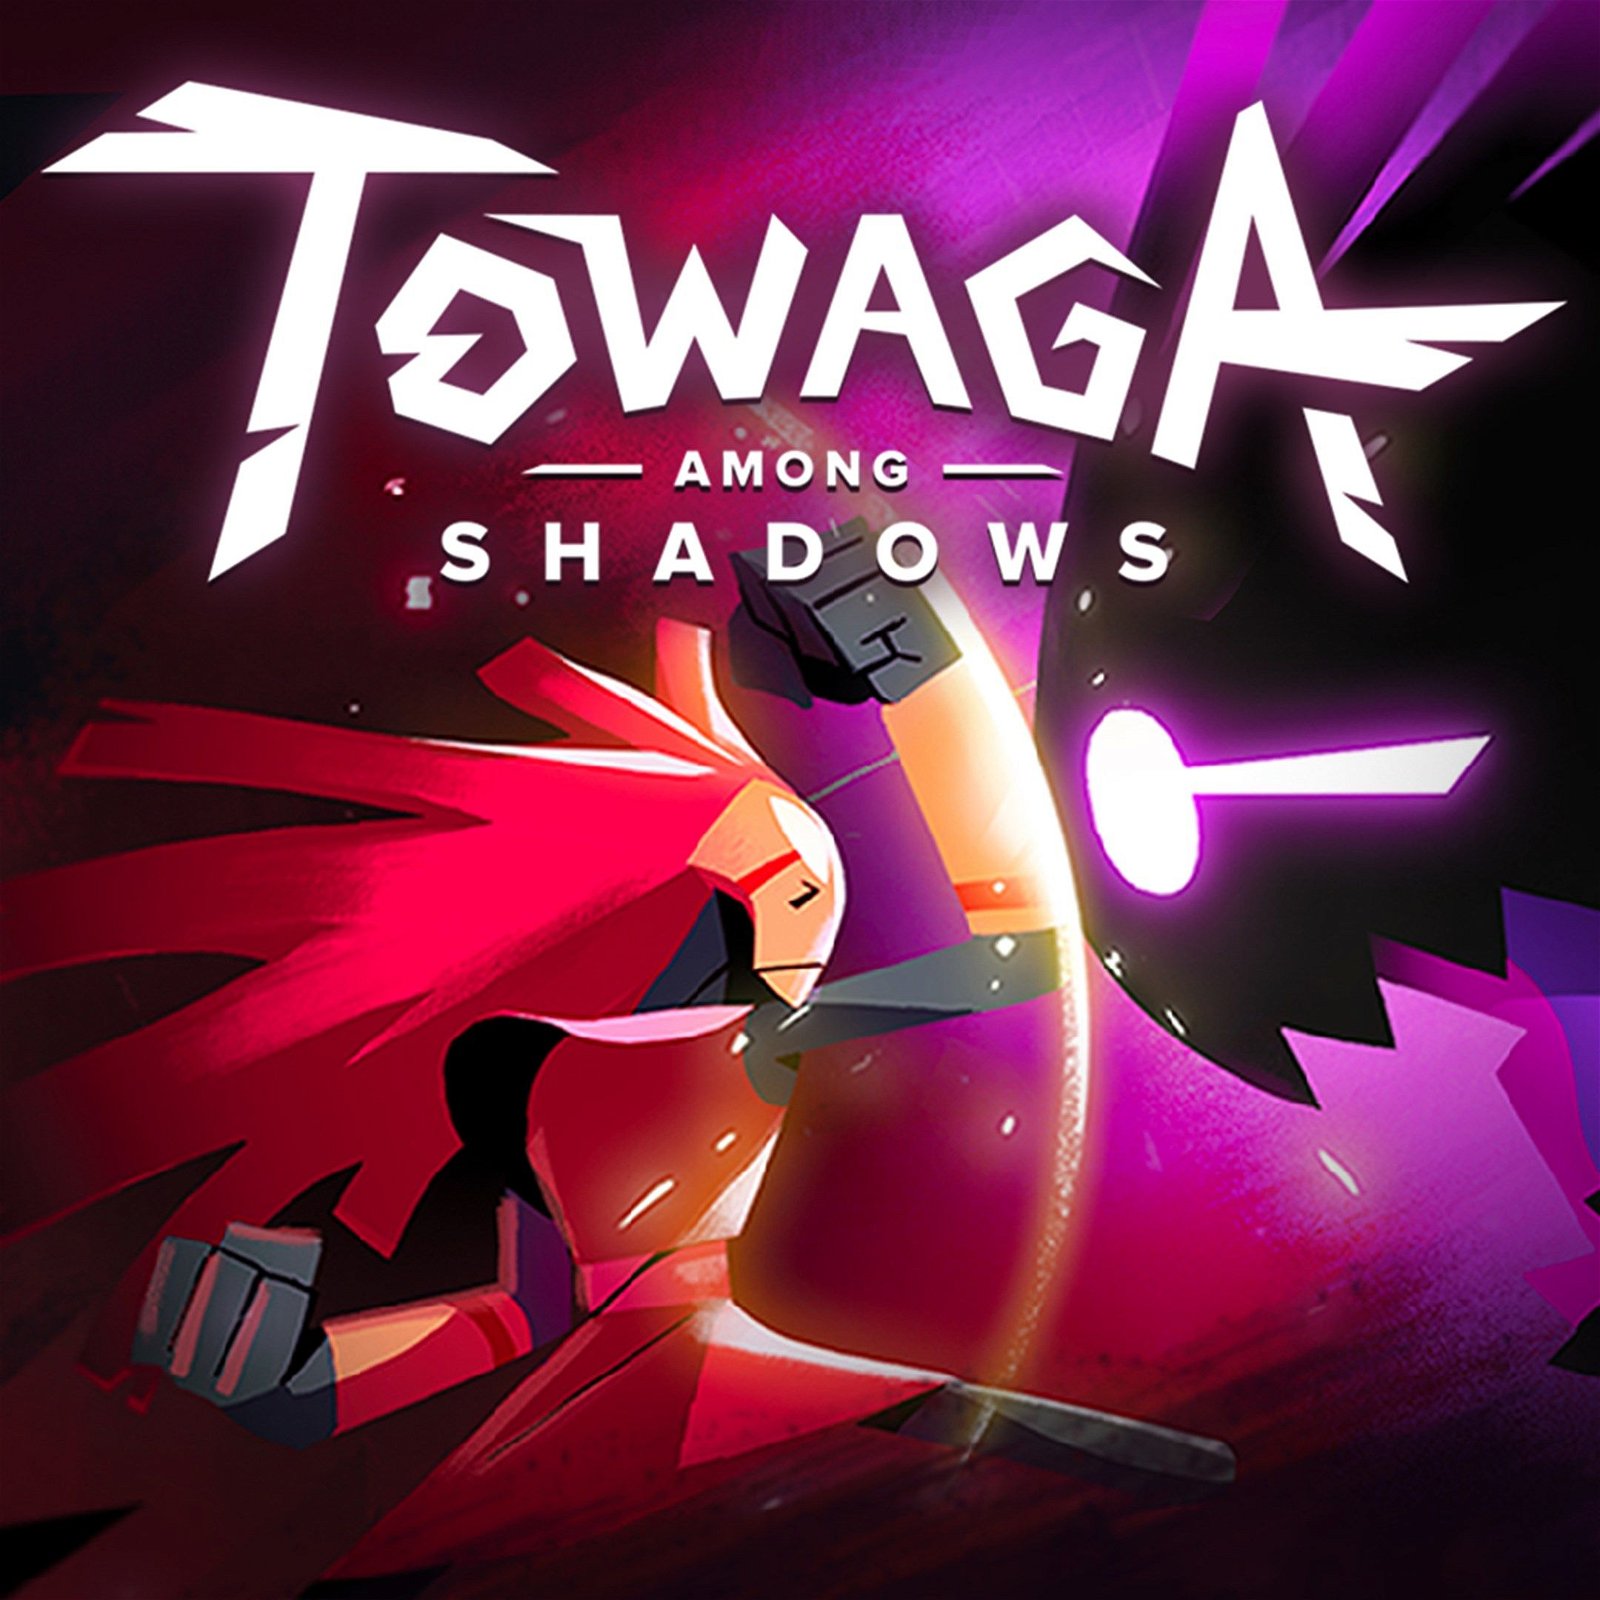 Image of Towaga: Among Shadows